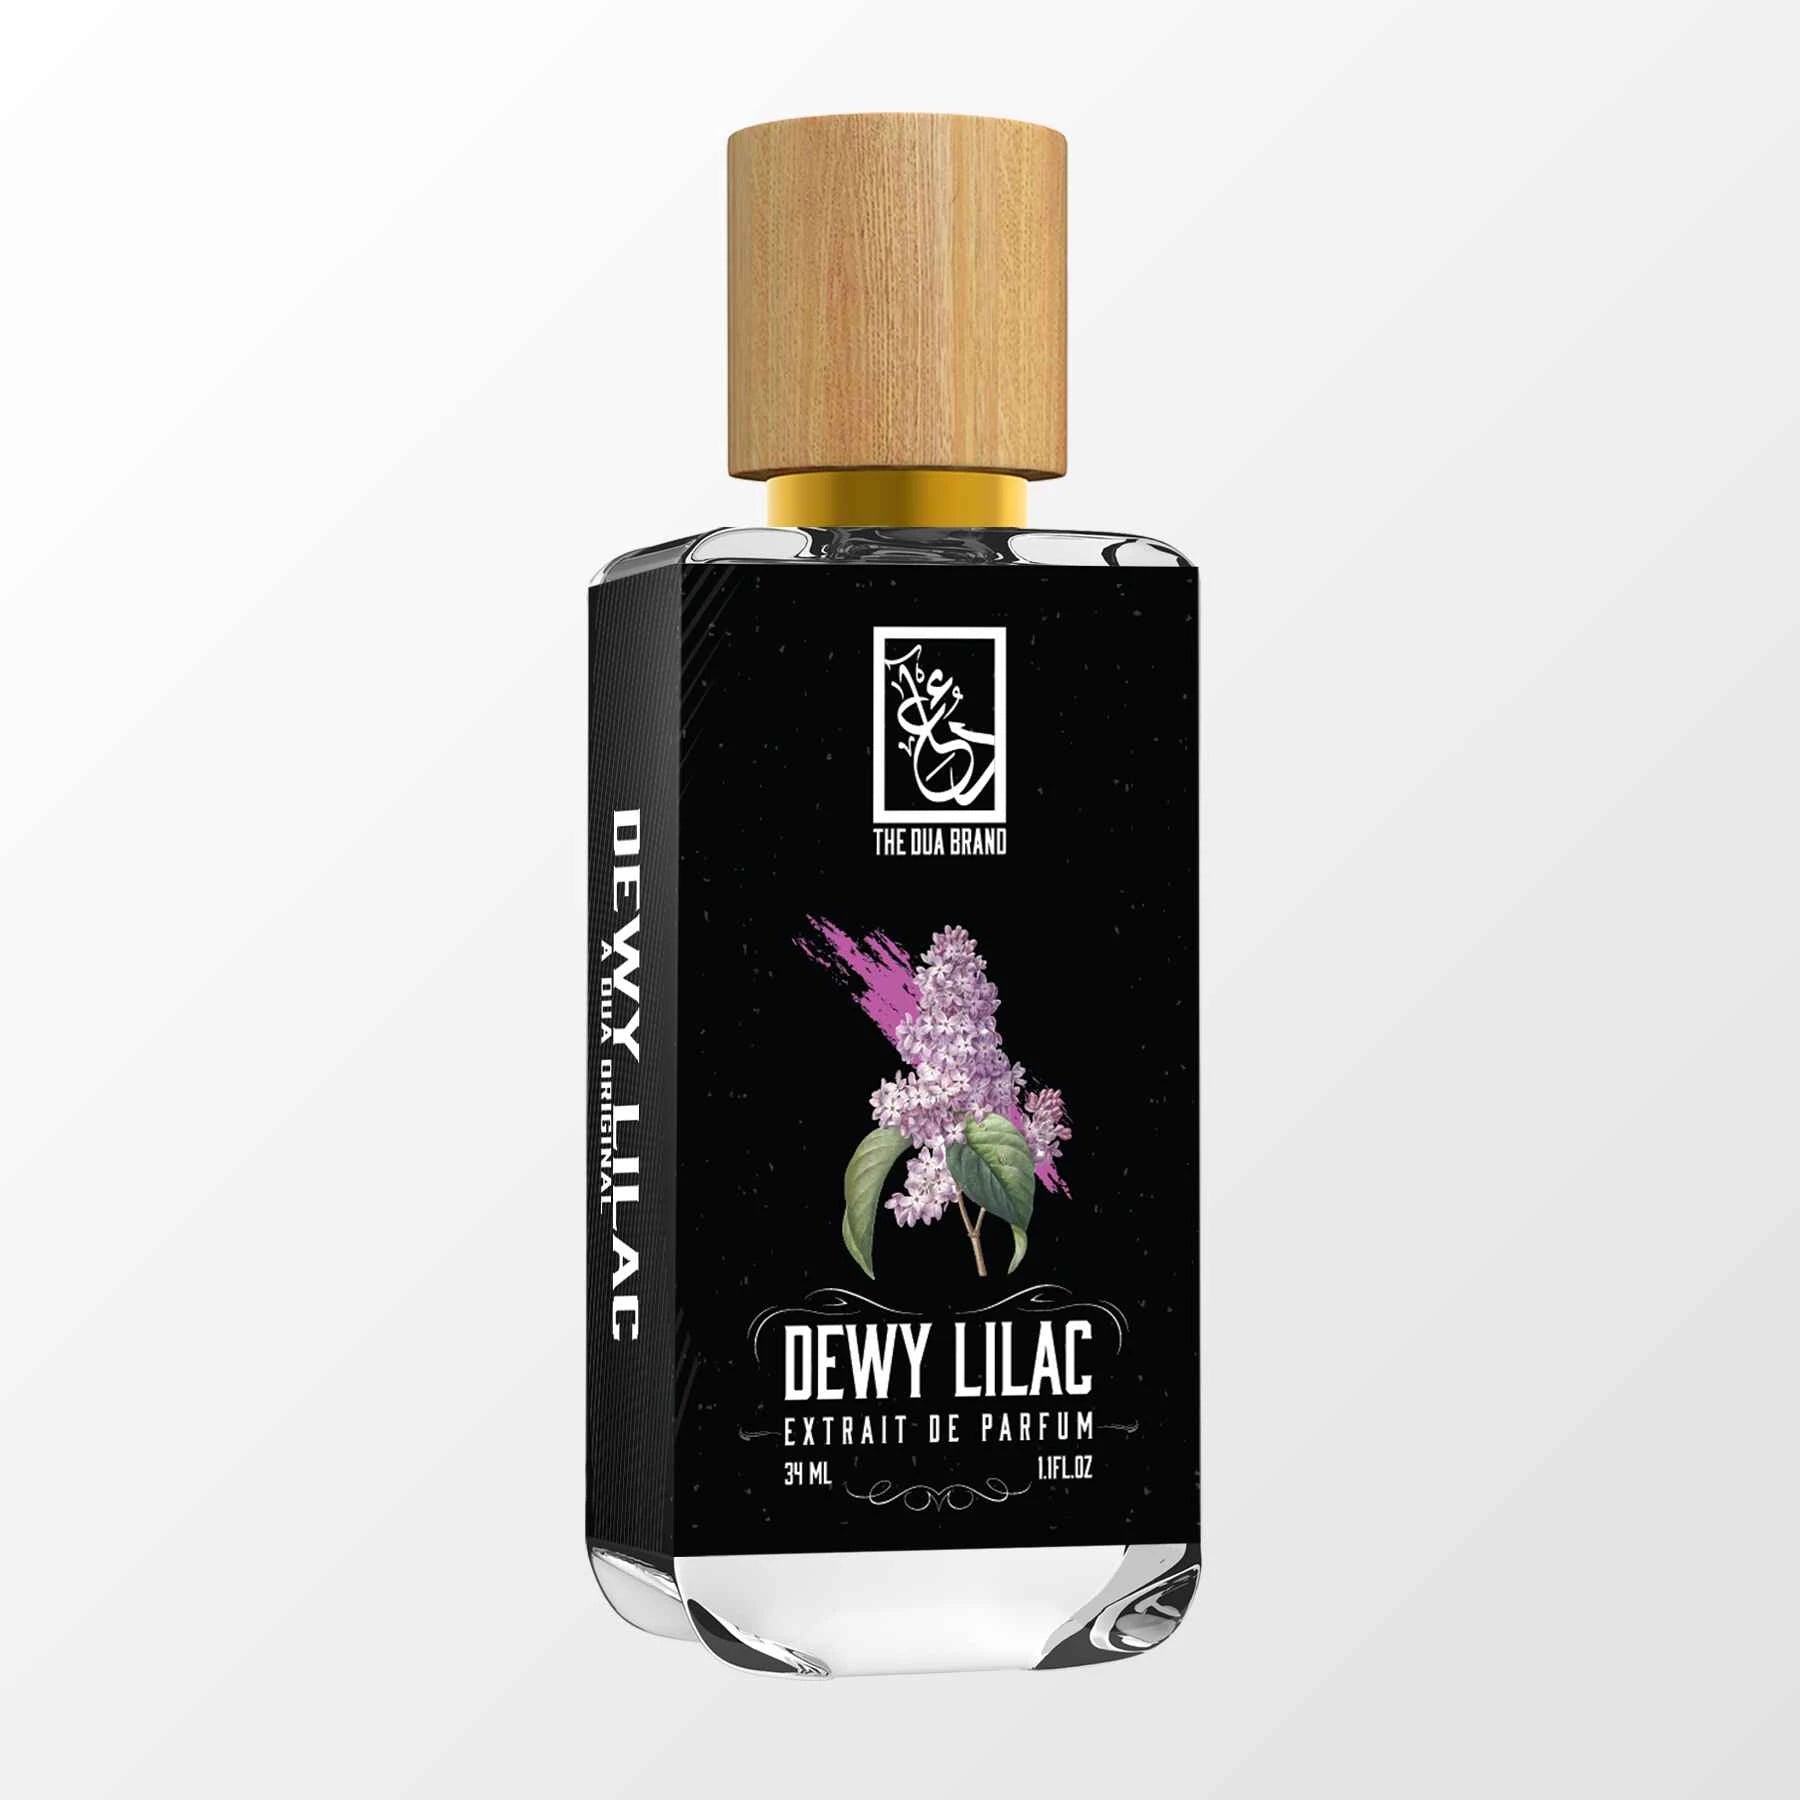 Dewy Lilac - DUA FRAGRANCES - Floral Amber - Unisex Perfume - 34ml/1.1 FL  OZ - Extrait De Parfum